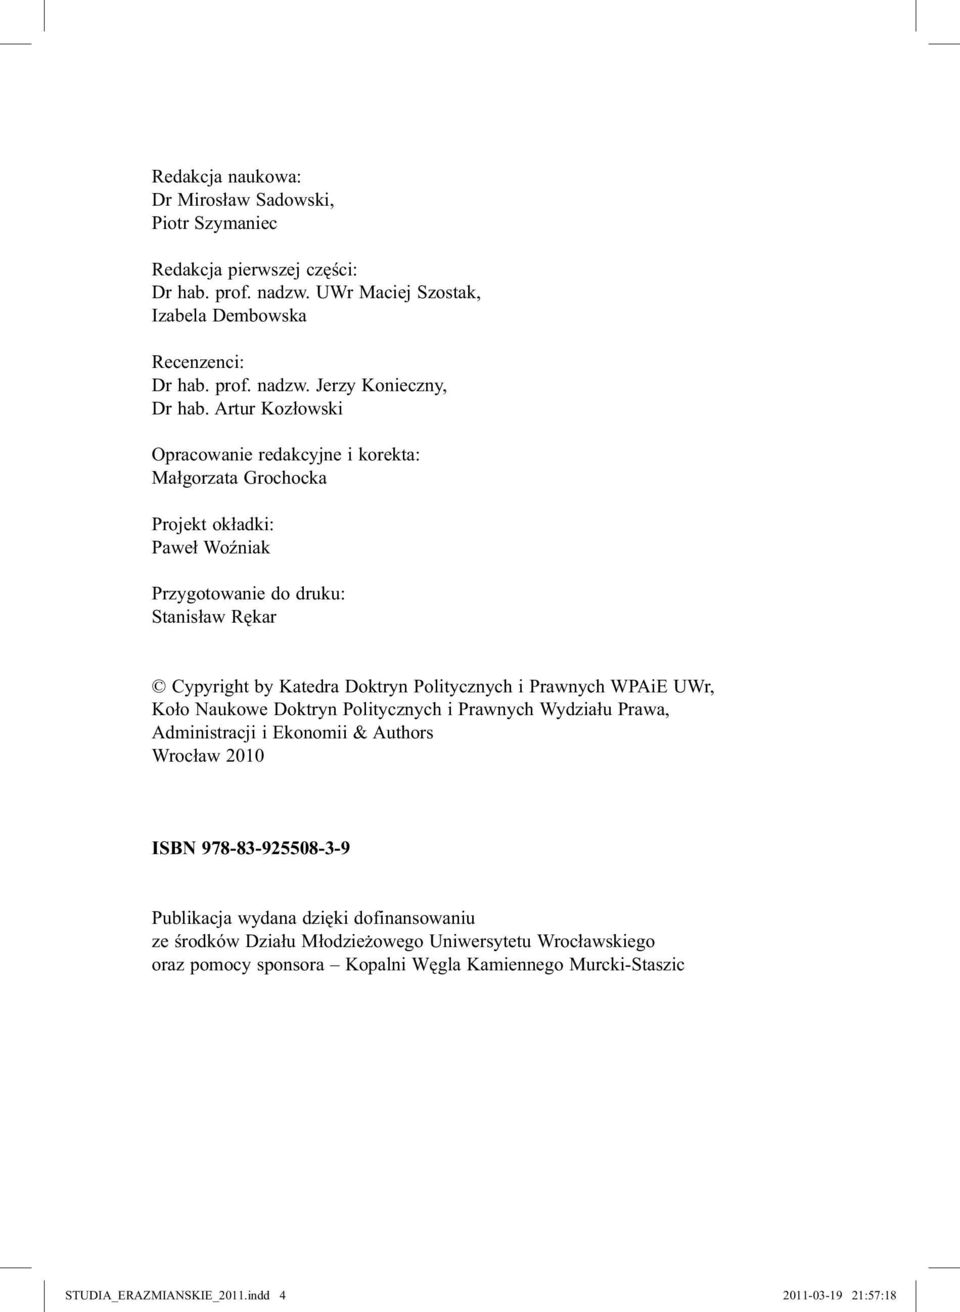 Prawnych WPAiE UWr, Koło Naukowe Doktryn Politycznych i Prawnych Wydziału Prawa, Administracji i Ekonomii & Authors Wrocław 2010 ISBN 978-83-925508-3-9 Publikacja wydana dzięki